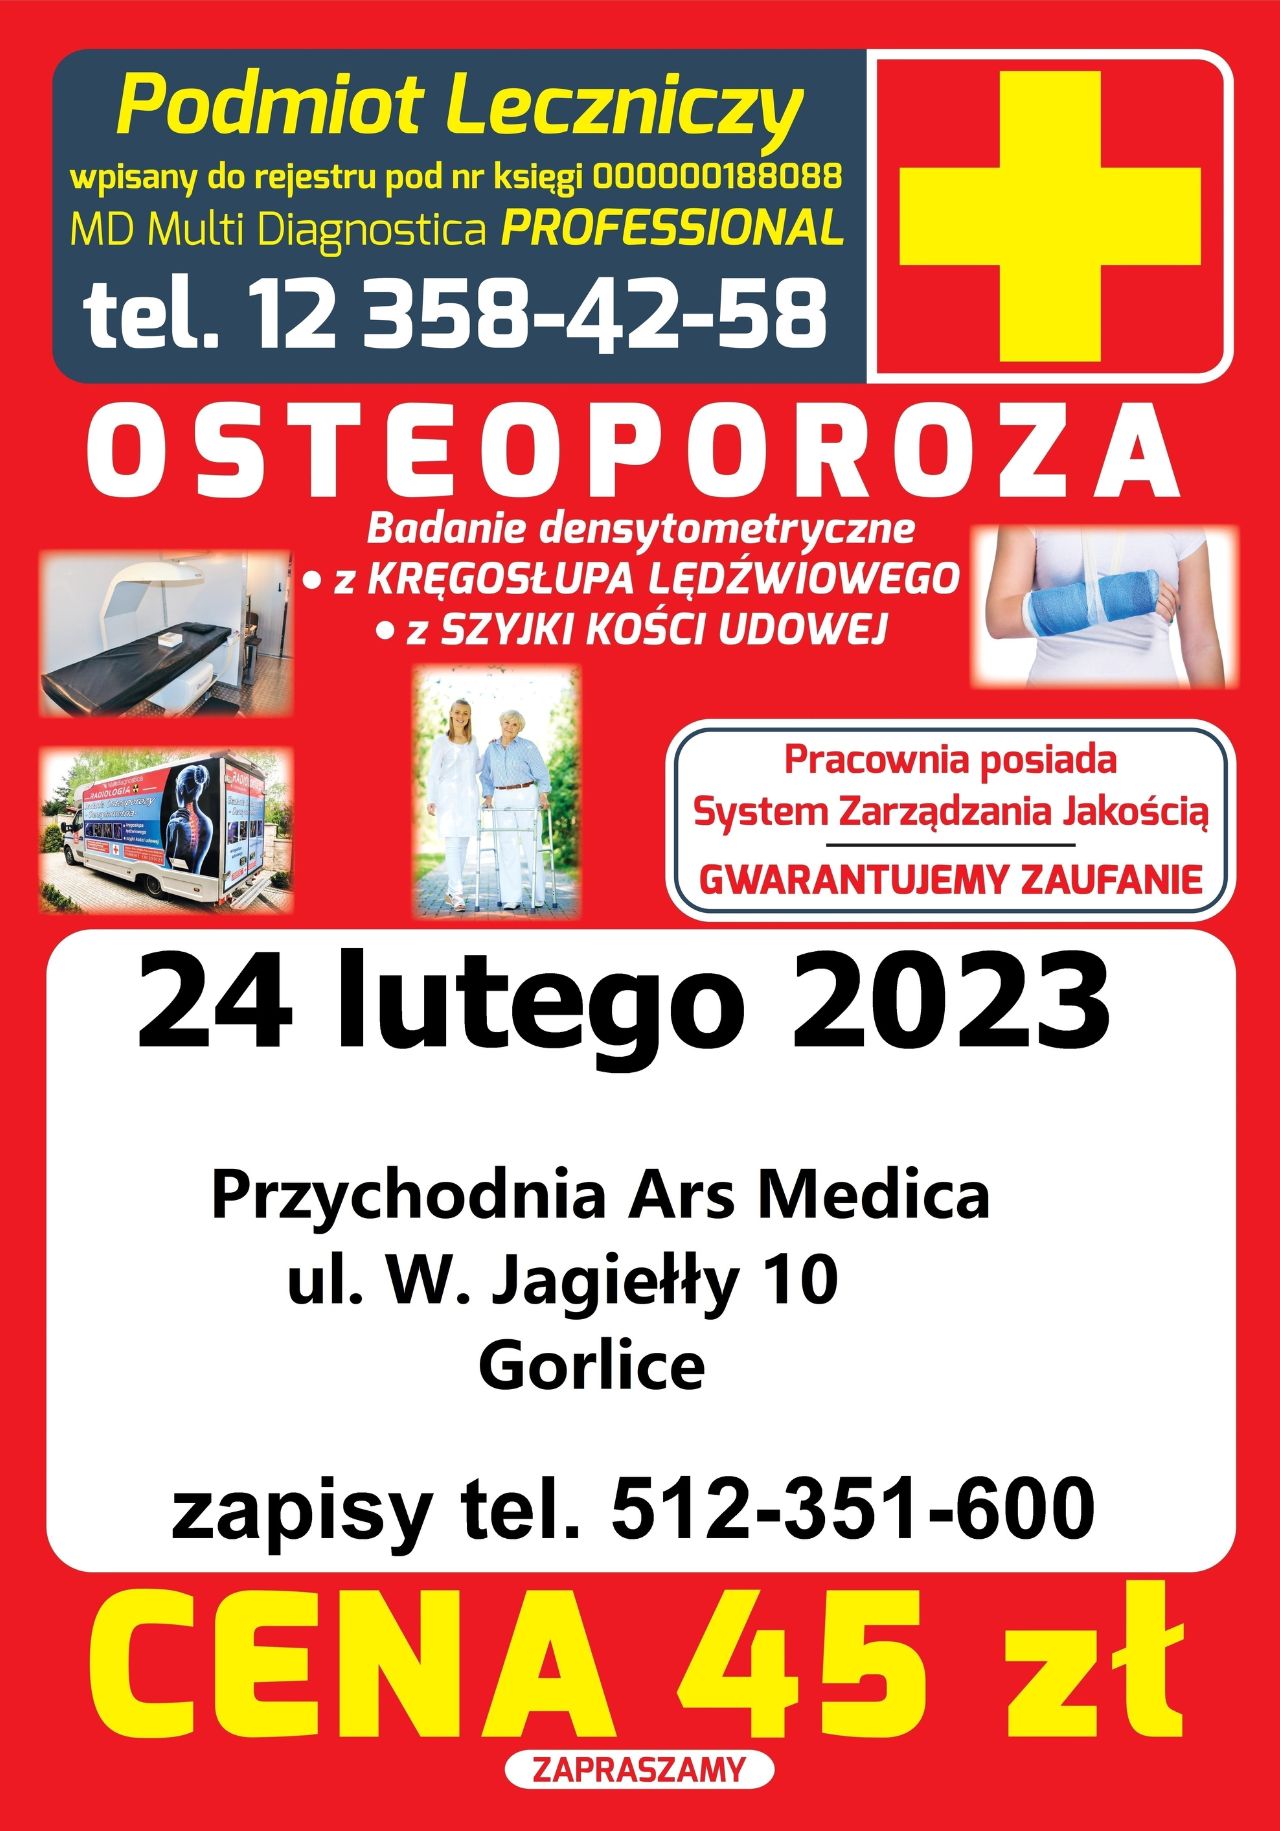 Badanie odbędzie się 24 lutego 2023 (piątek) w mobilnej pracowni densytometrycznej – OSTEOBUSIE, Przychodnia Ars Medica ul. W. Jagiełły 10 w Gorlicach. 